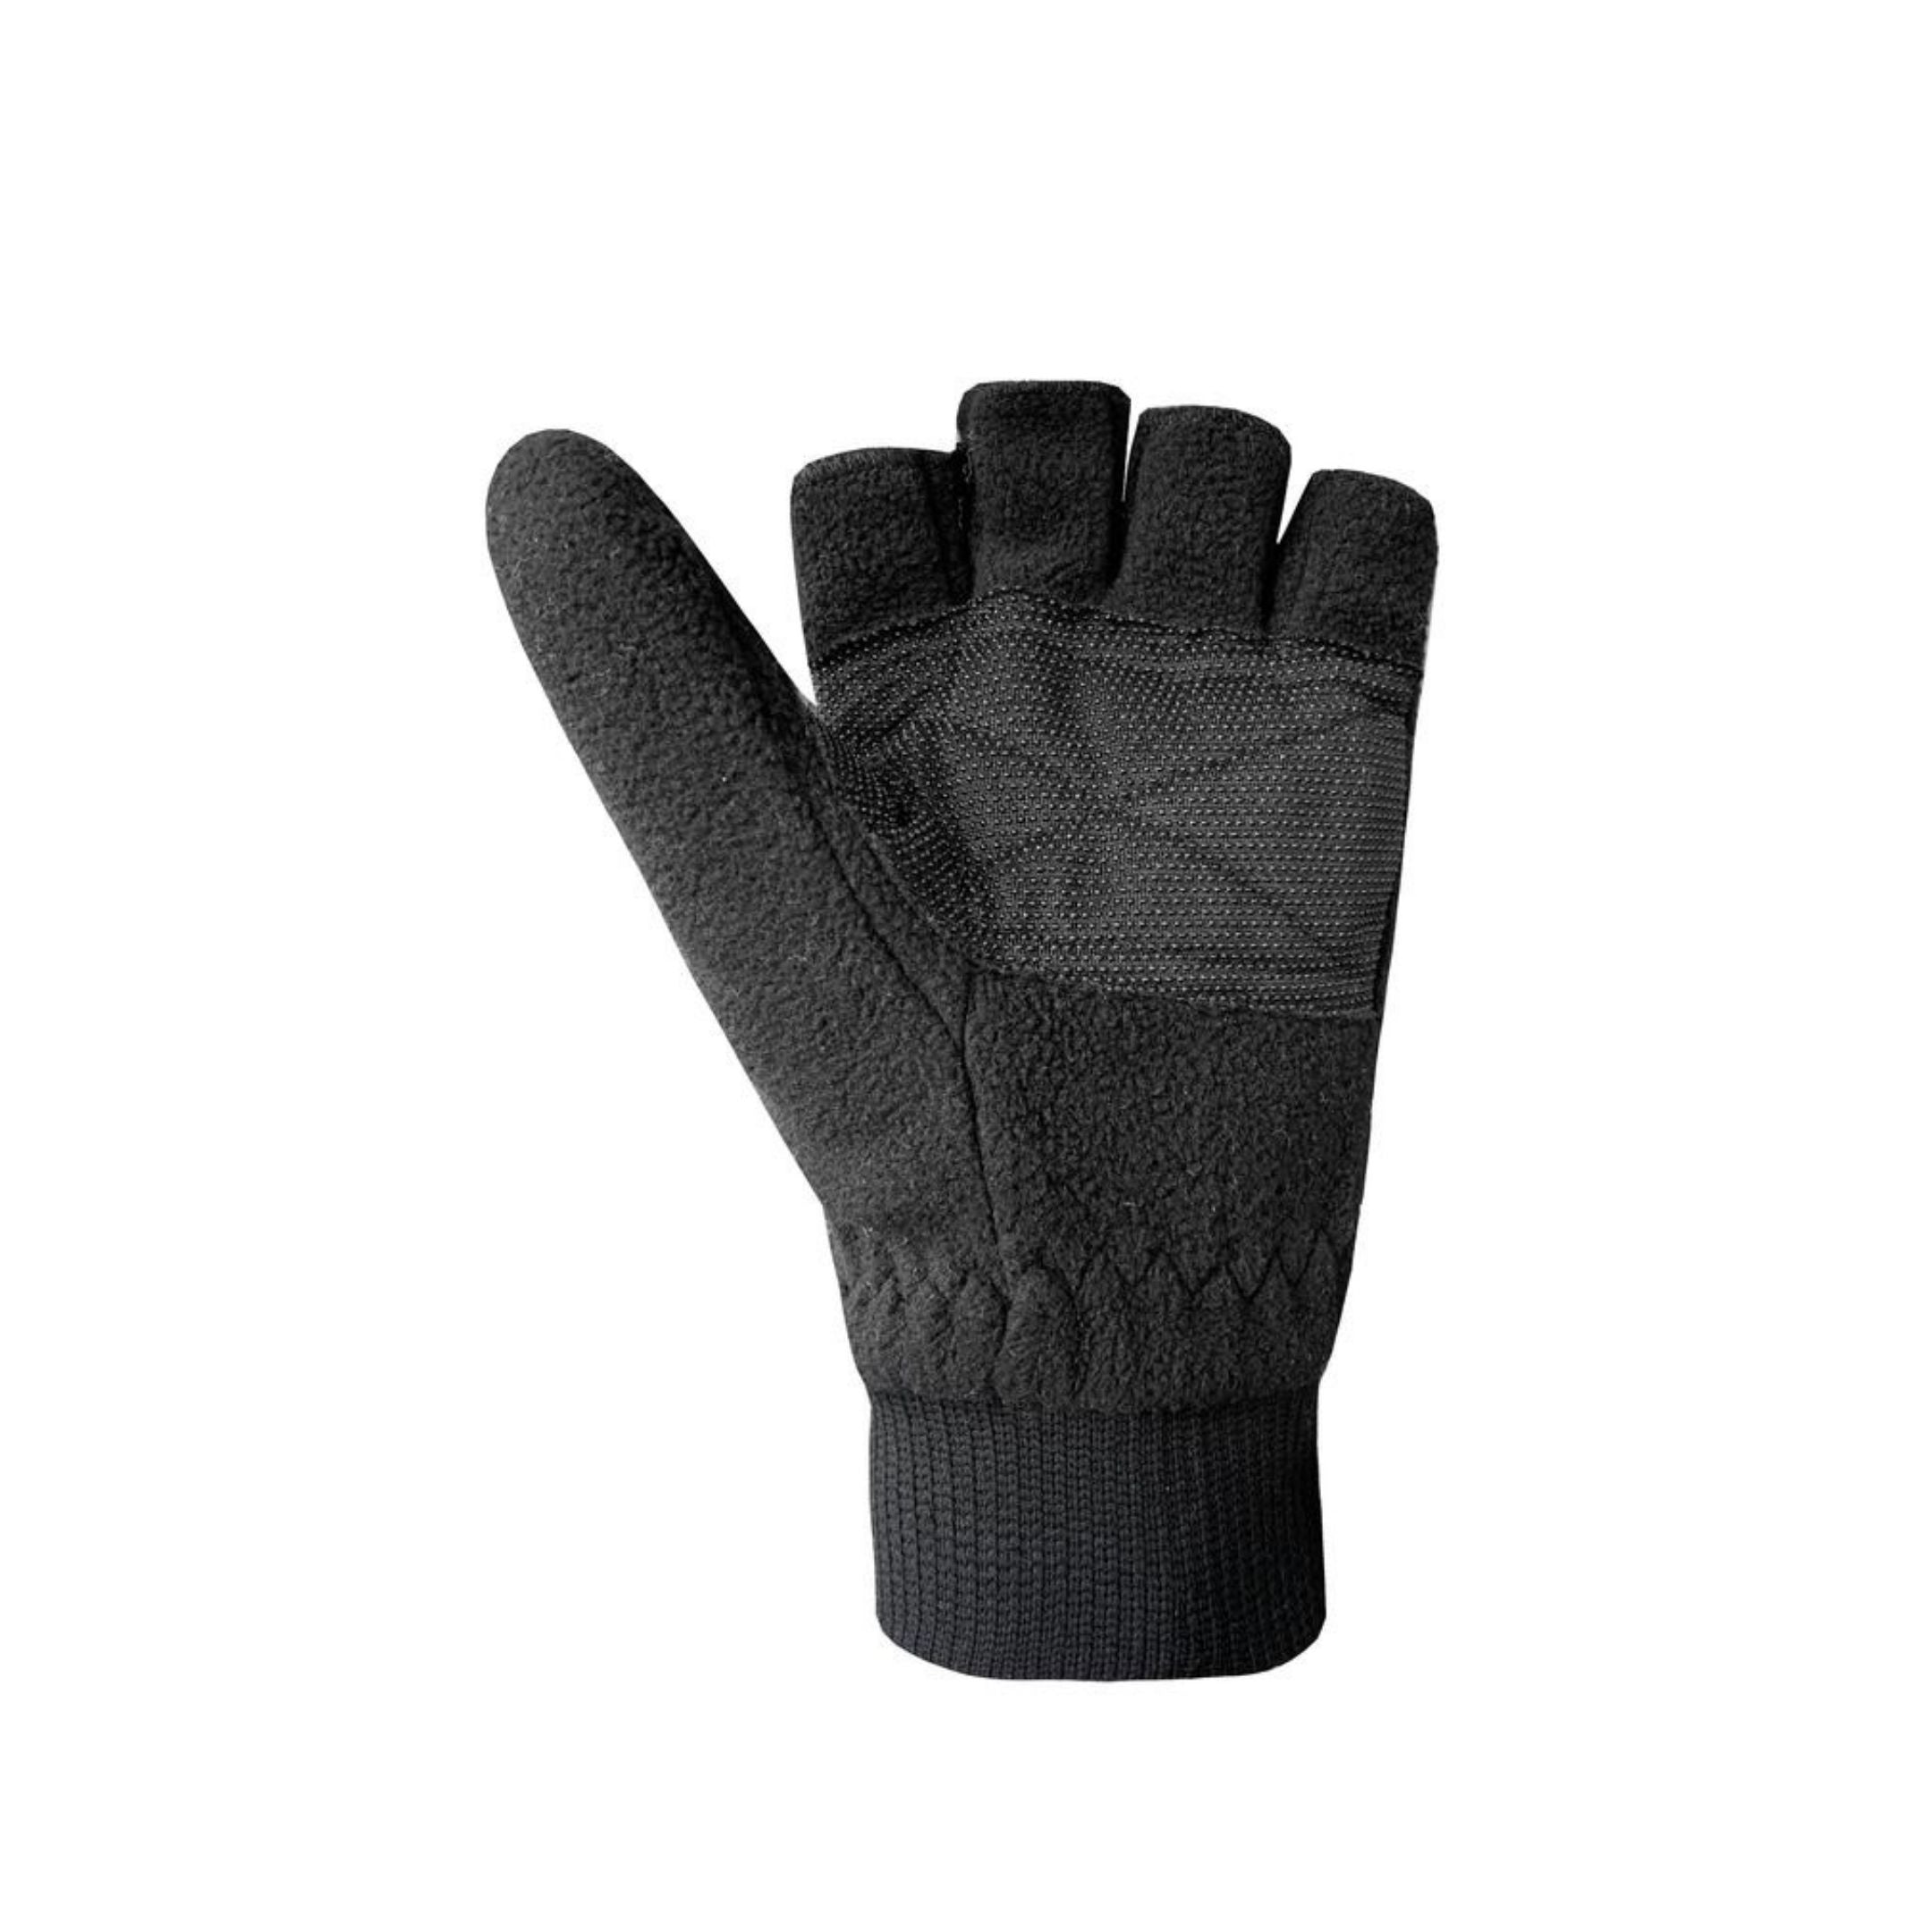 Black mittens folded back into fingerless gloves. 